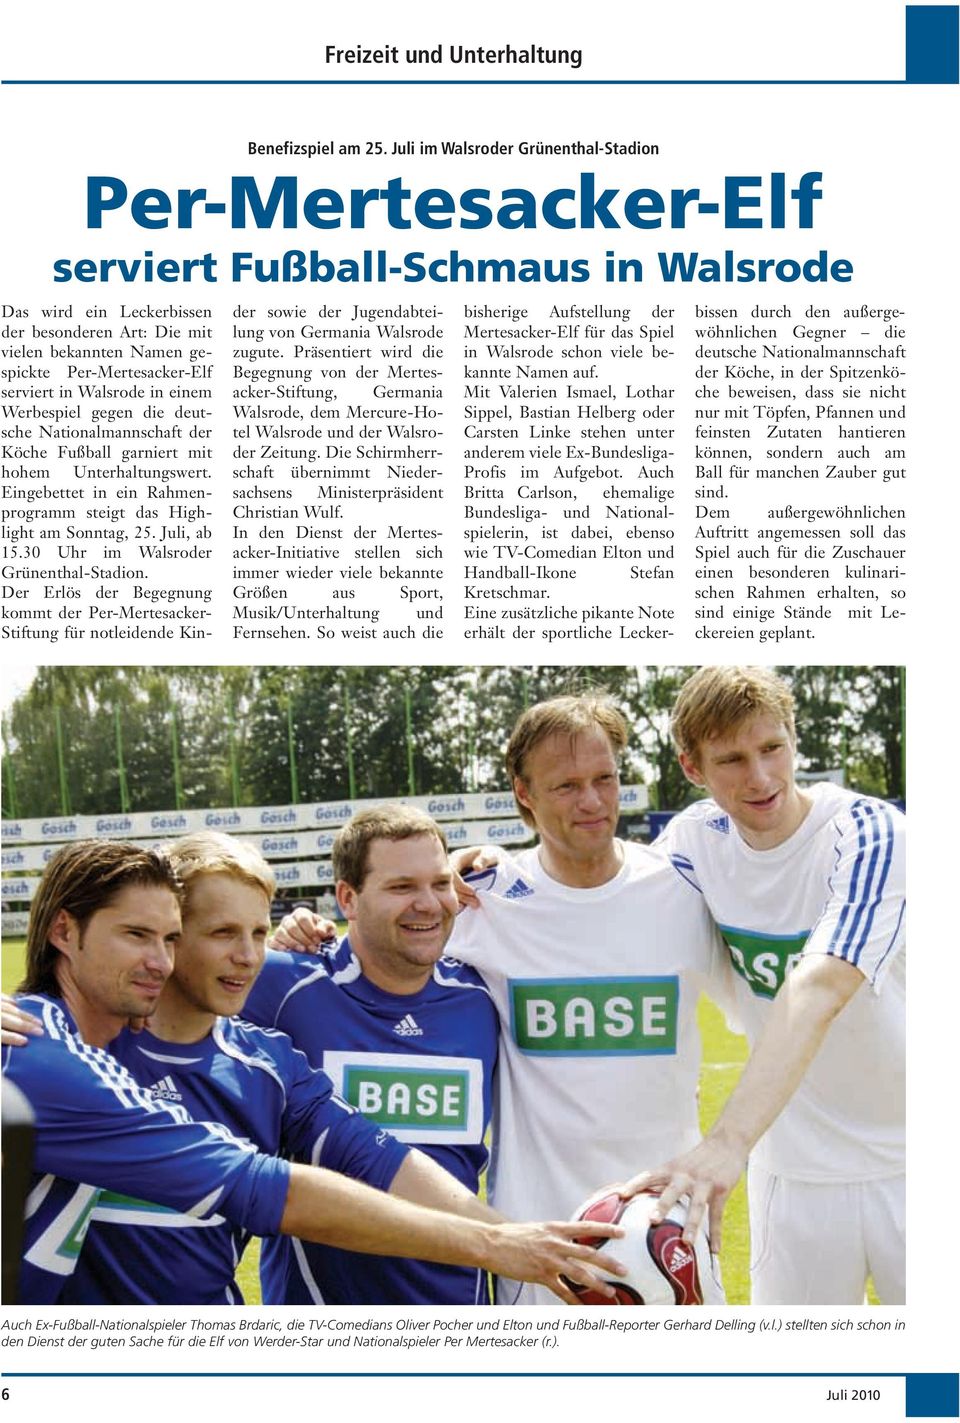 Per-Mertesacker-Elf serviert in Walsrode in einem Werbespiel gegen die deutsche Nationalmannschaft der Köche Fußball garniert mit hohem Unterhaltungswert.